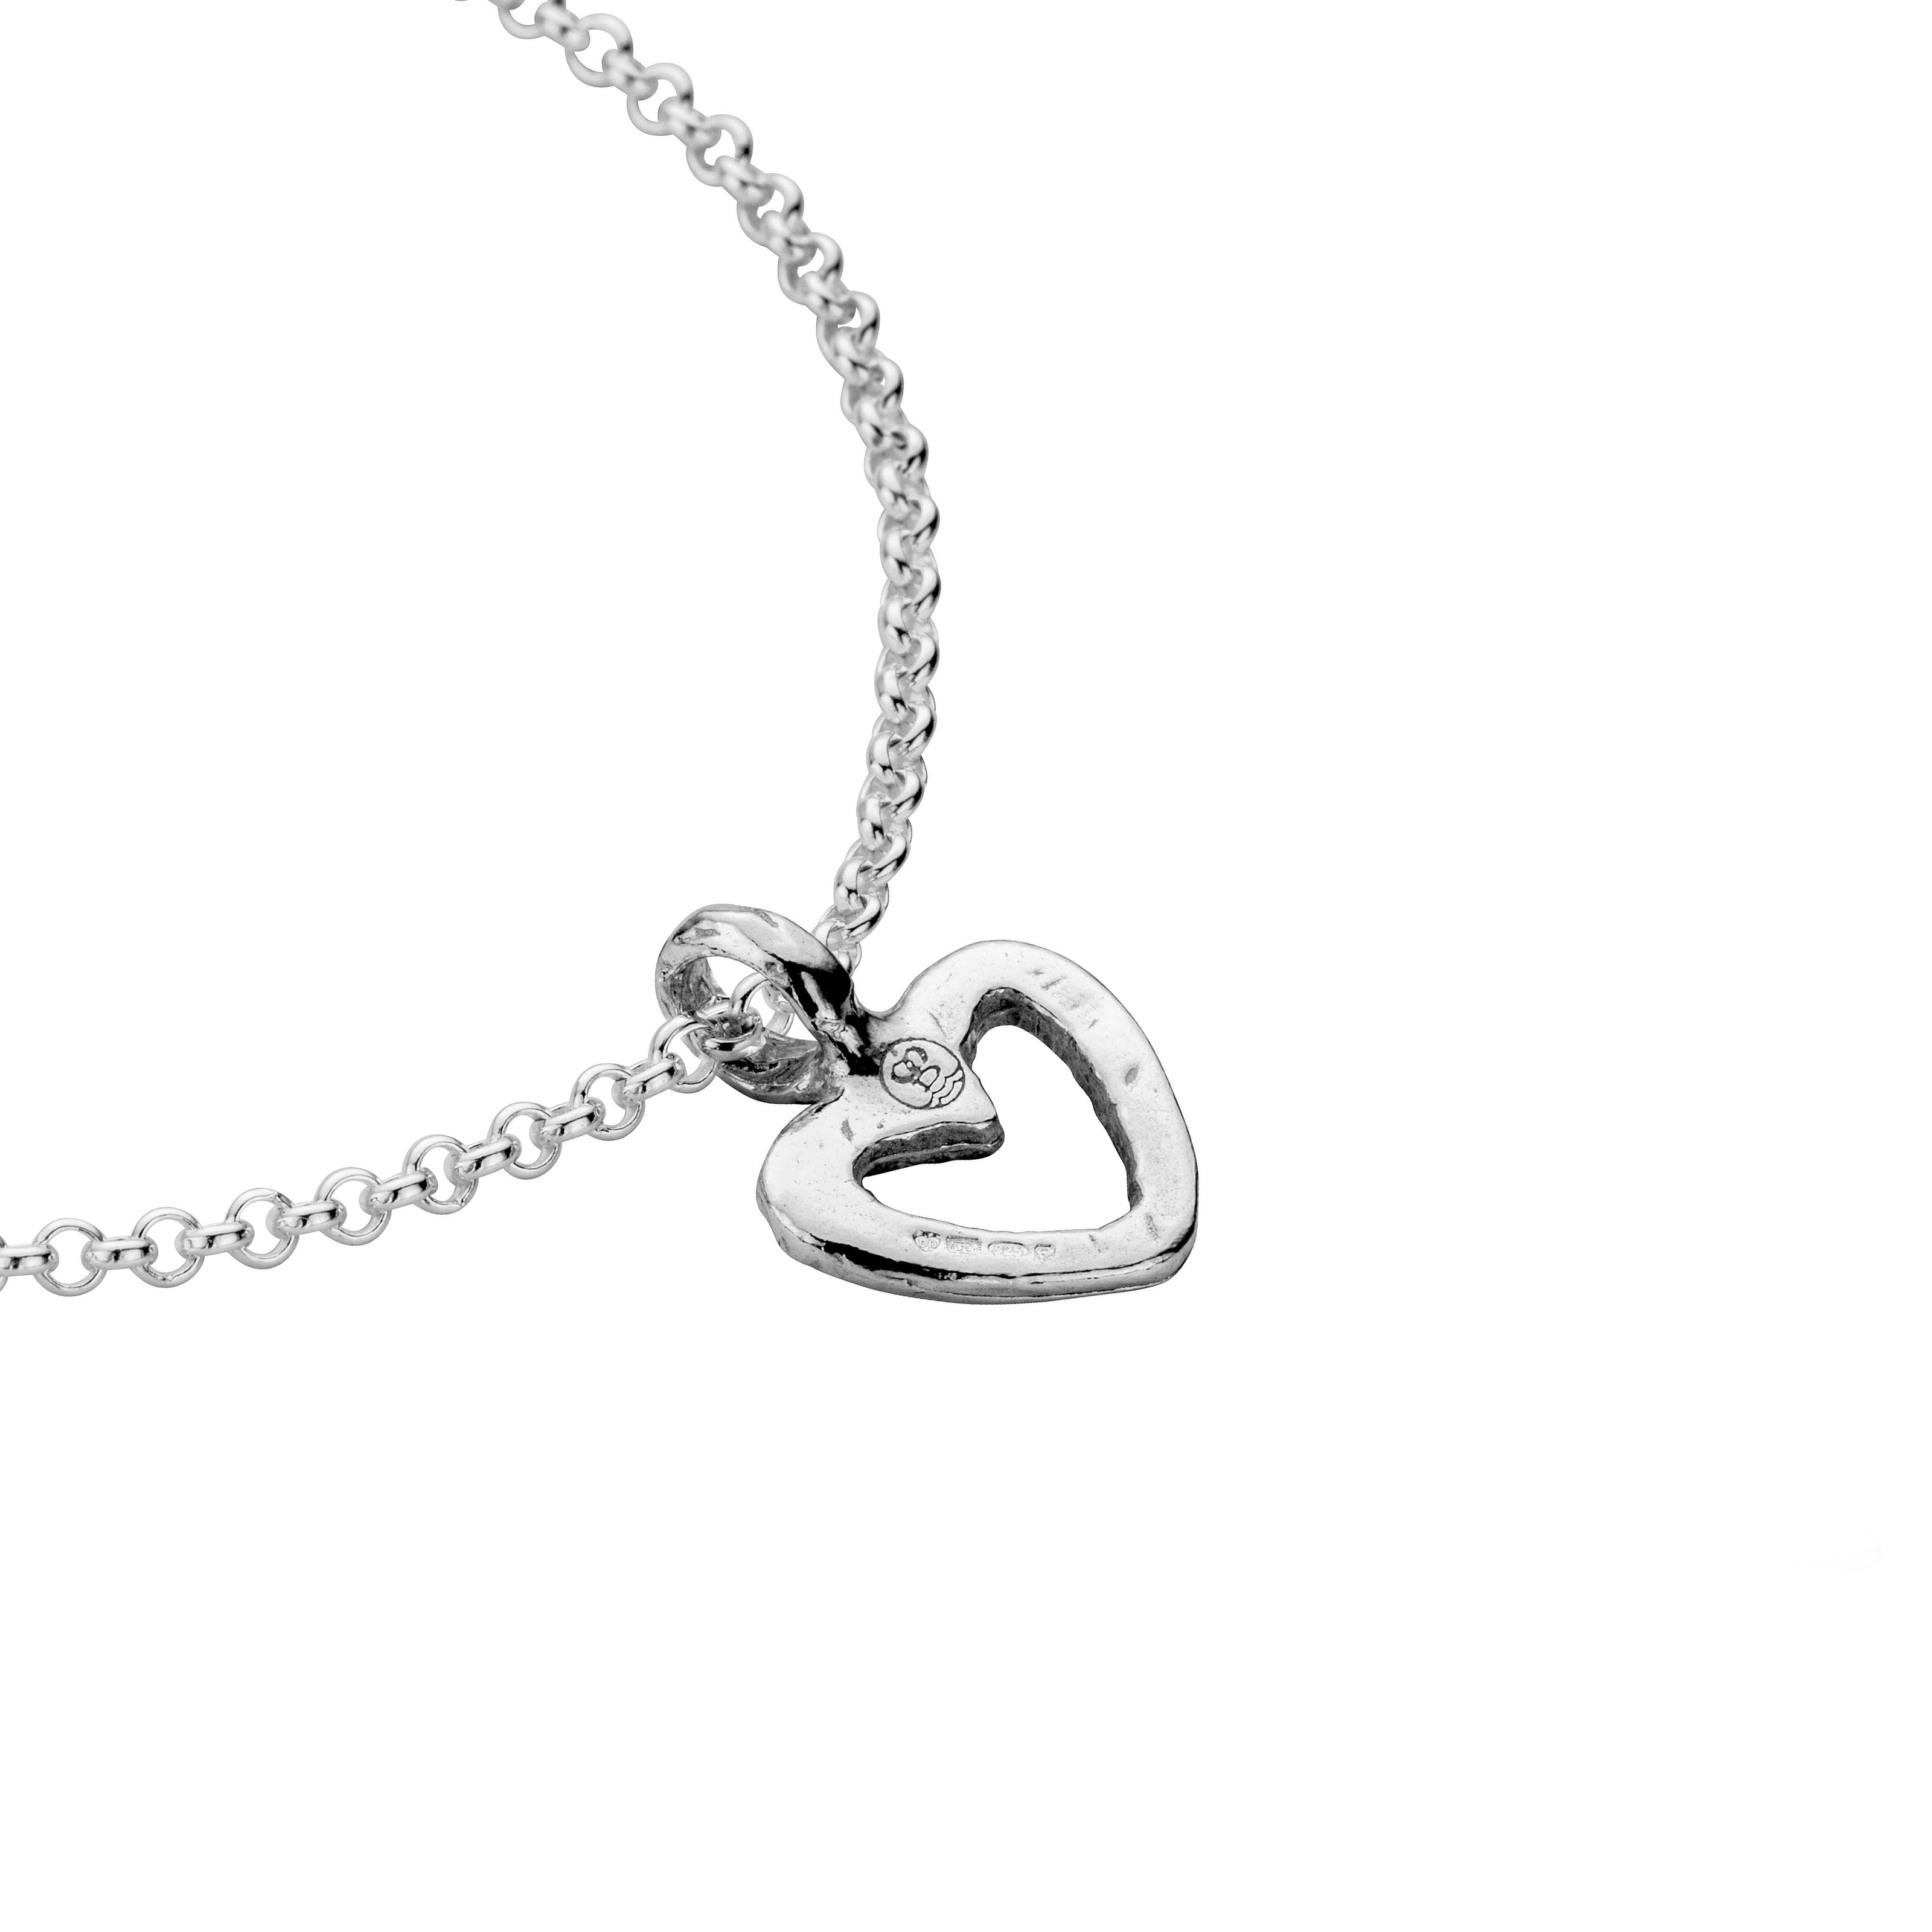 Silver Mini Open Heart Chain Bracelet